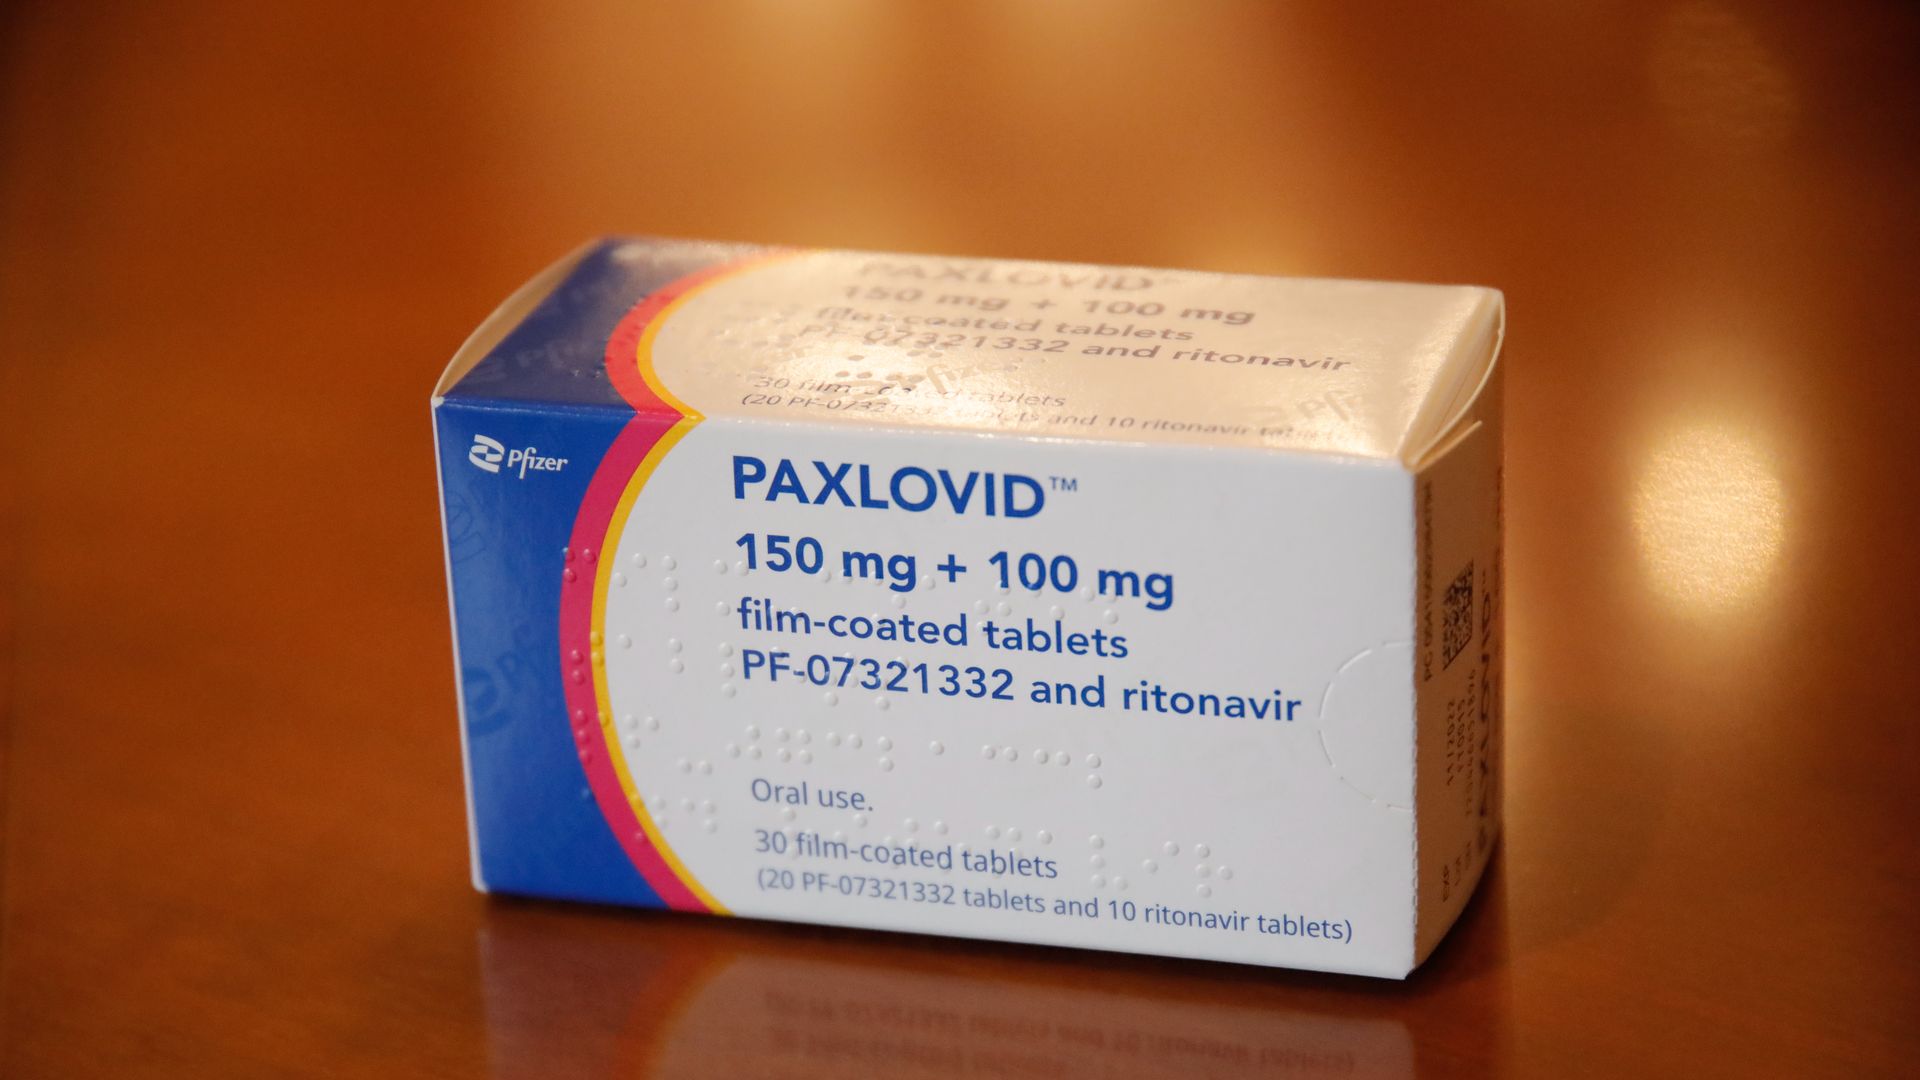 A box of the Pfizer COVID pill Paxlovid.